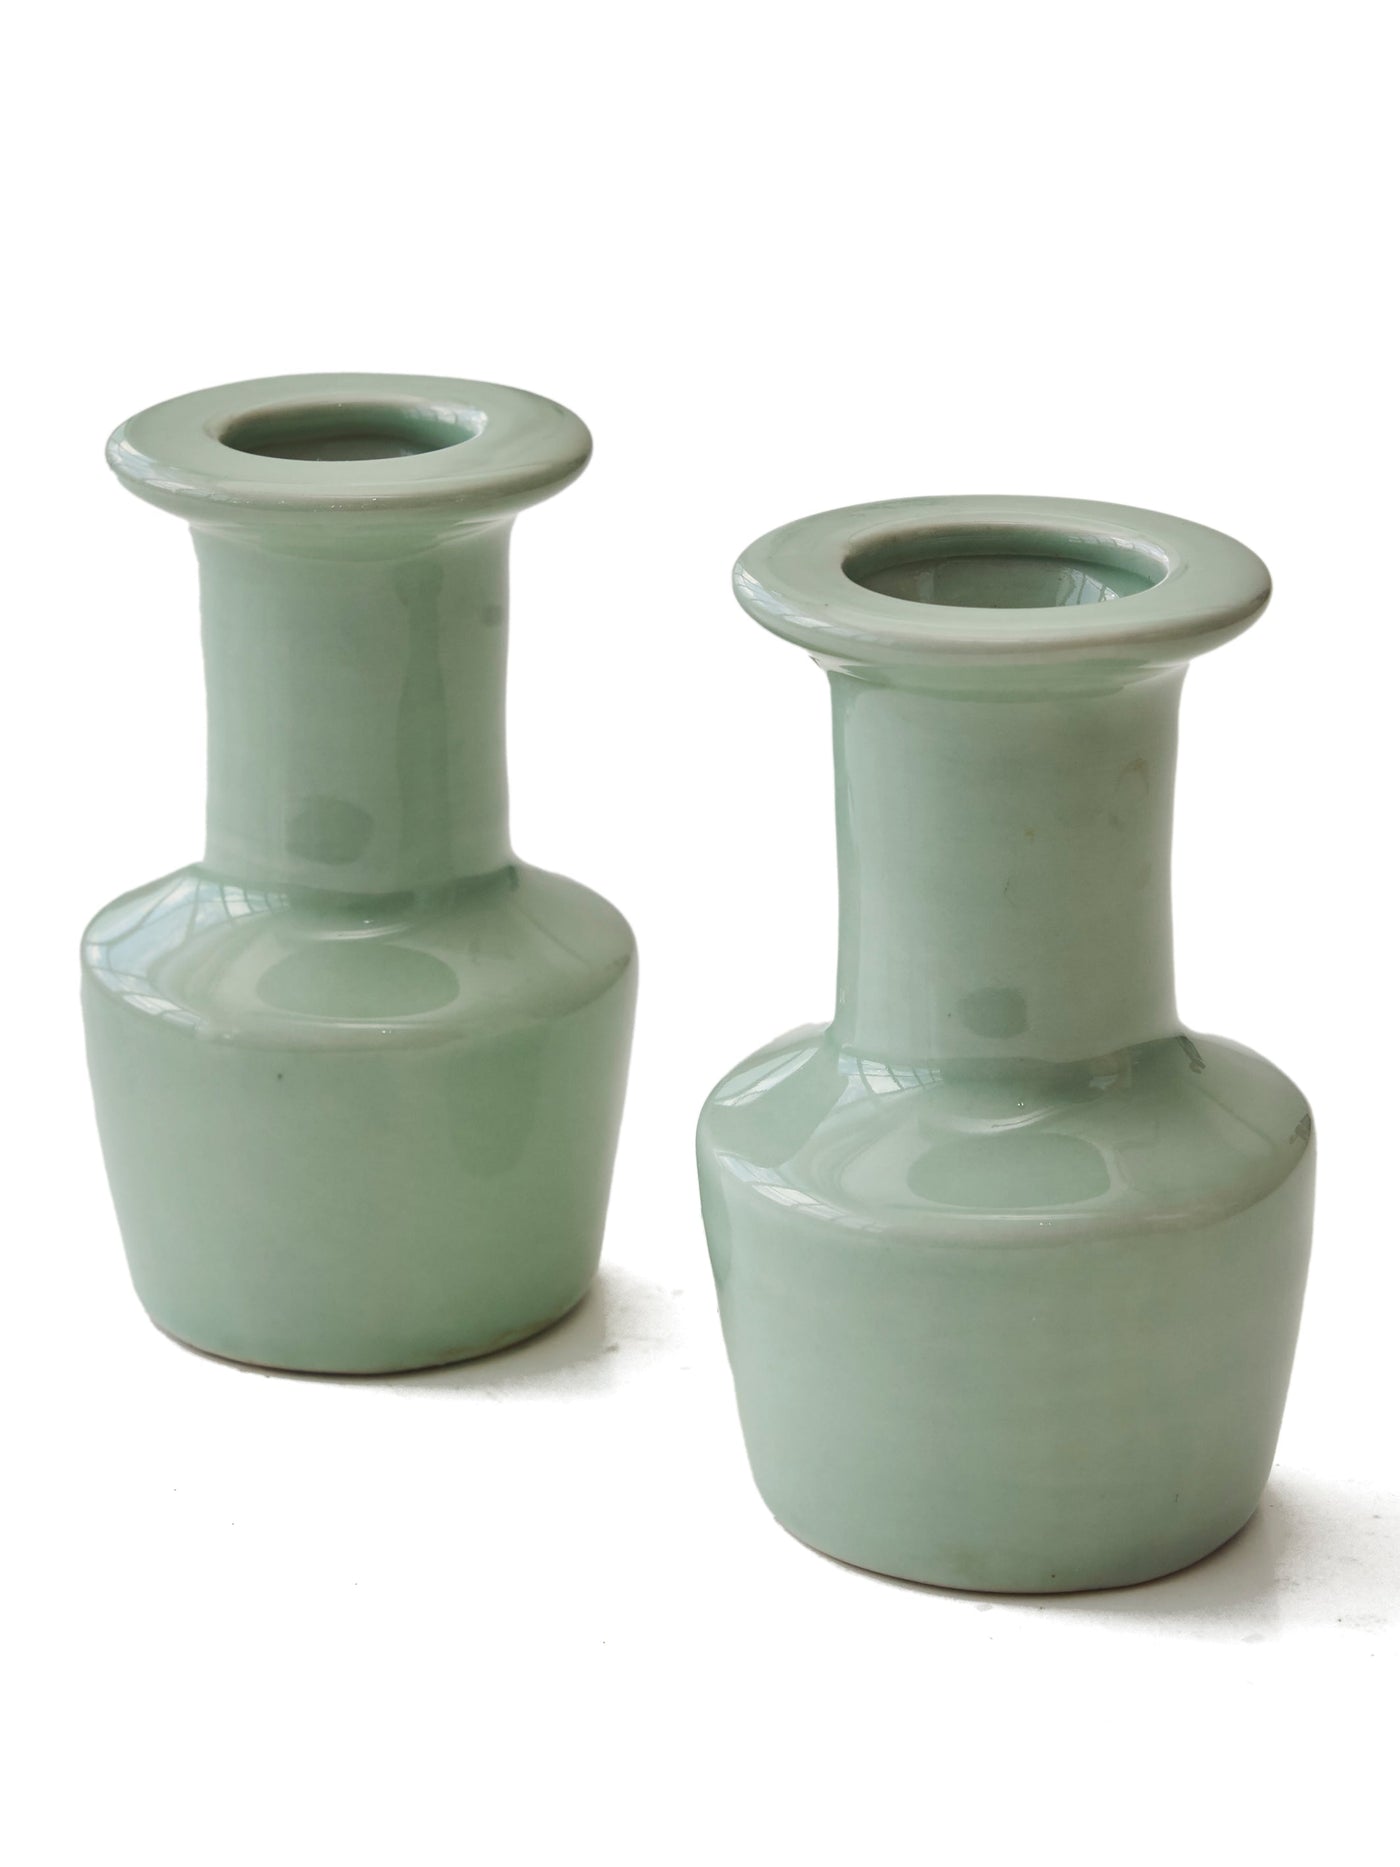 Pair of Vintage Chinese Ceramic Celadon Bud Vases